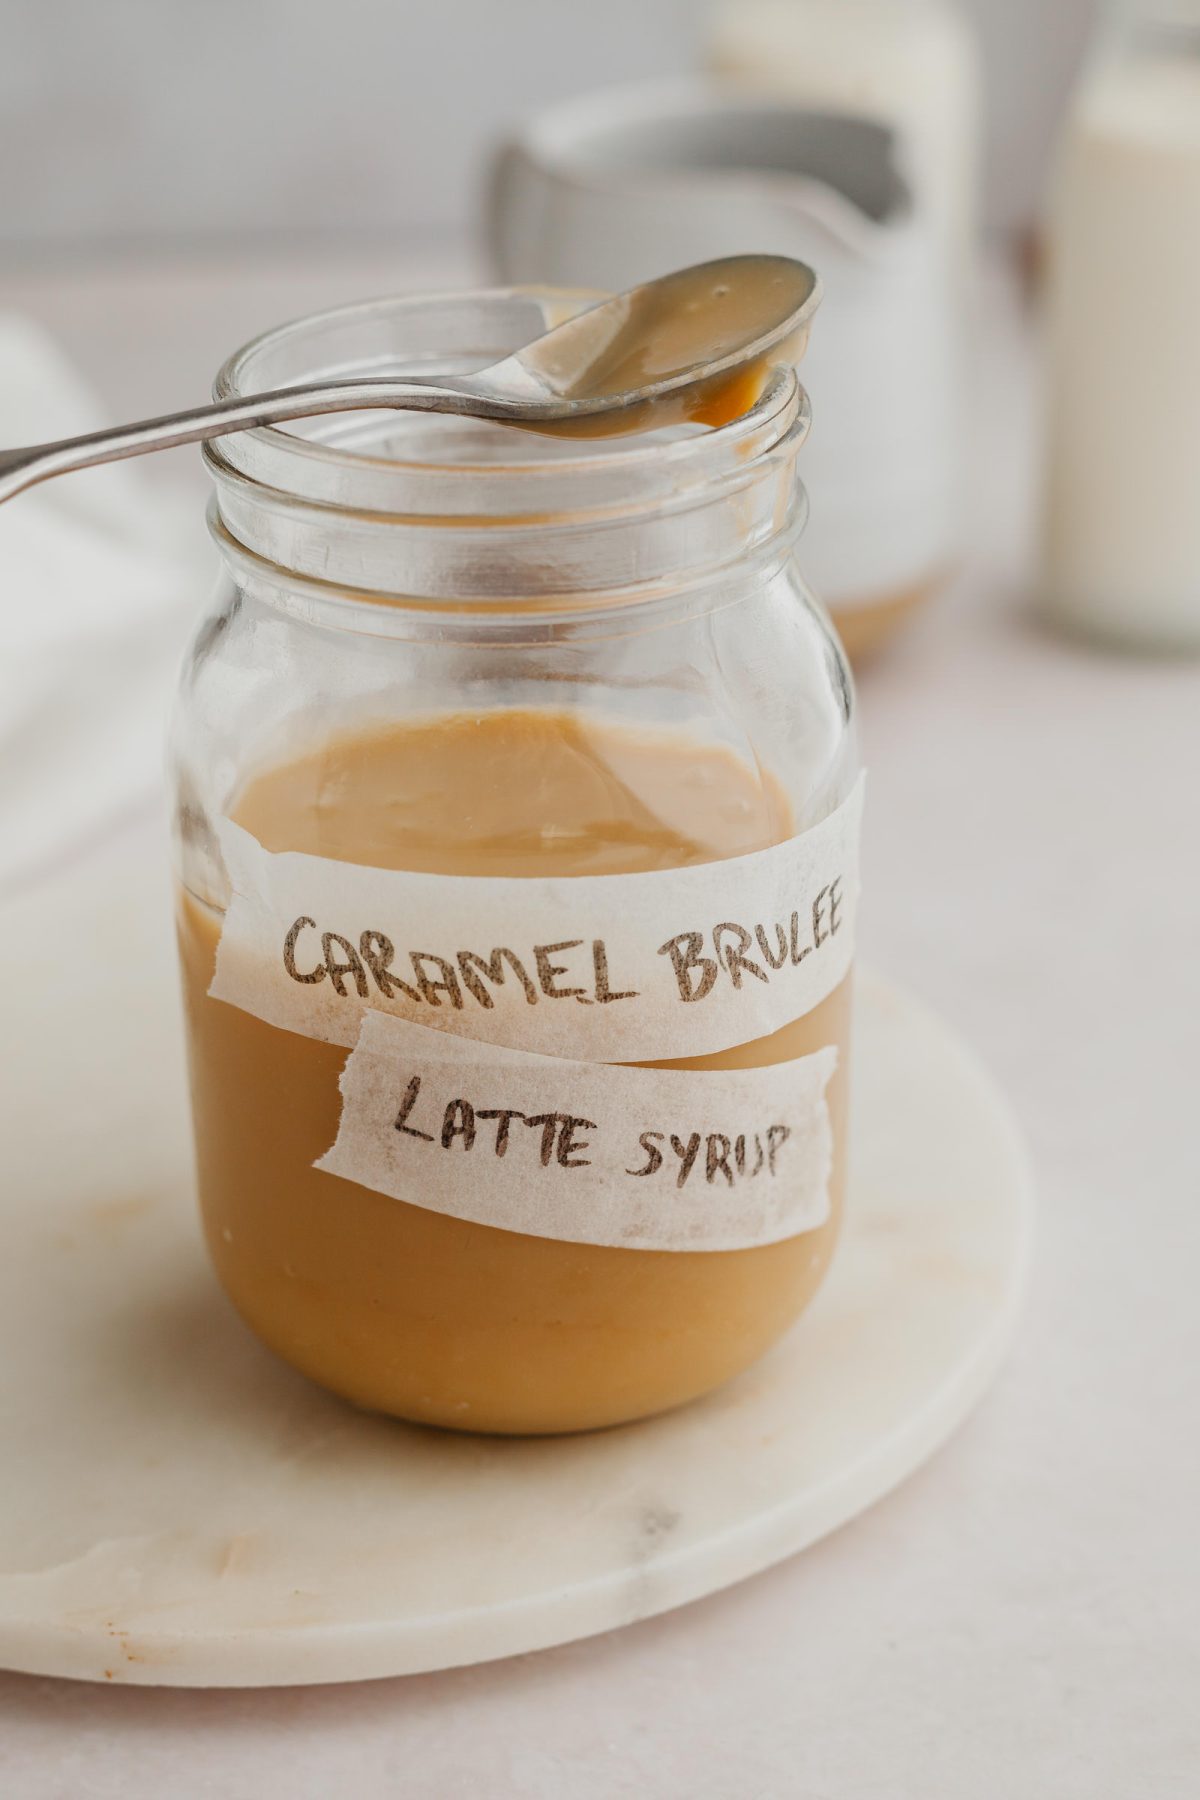 Caramel Brulee Latte Syrup